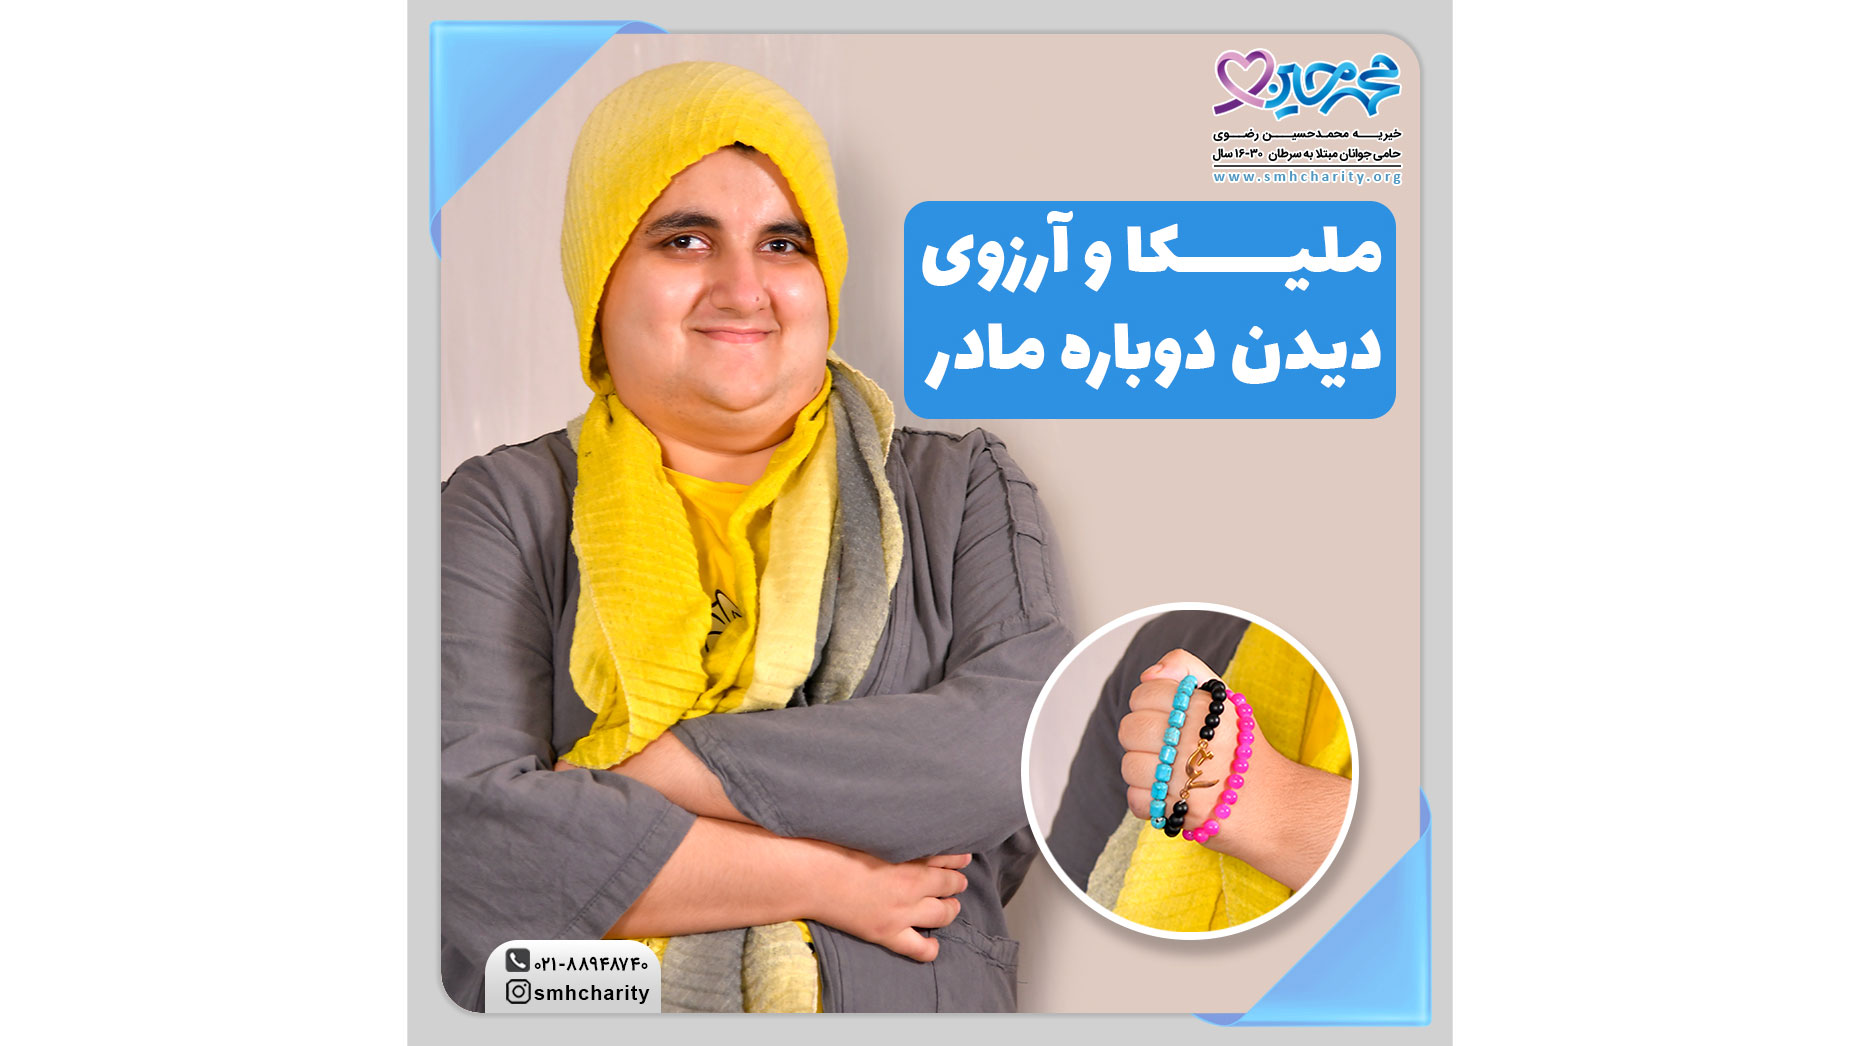 مصاحبه با ملیکا، جوان موفق تحت پوشش خیریه محمد حسین رضوی